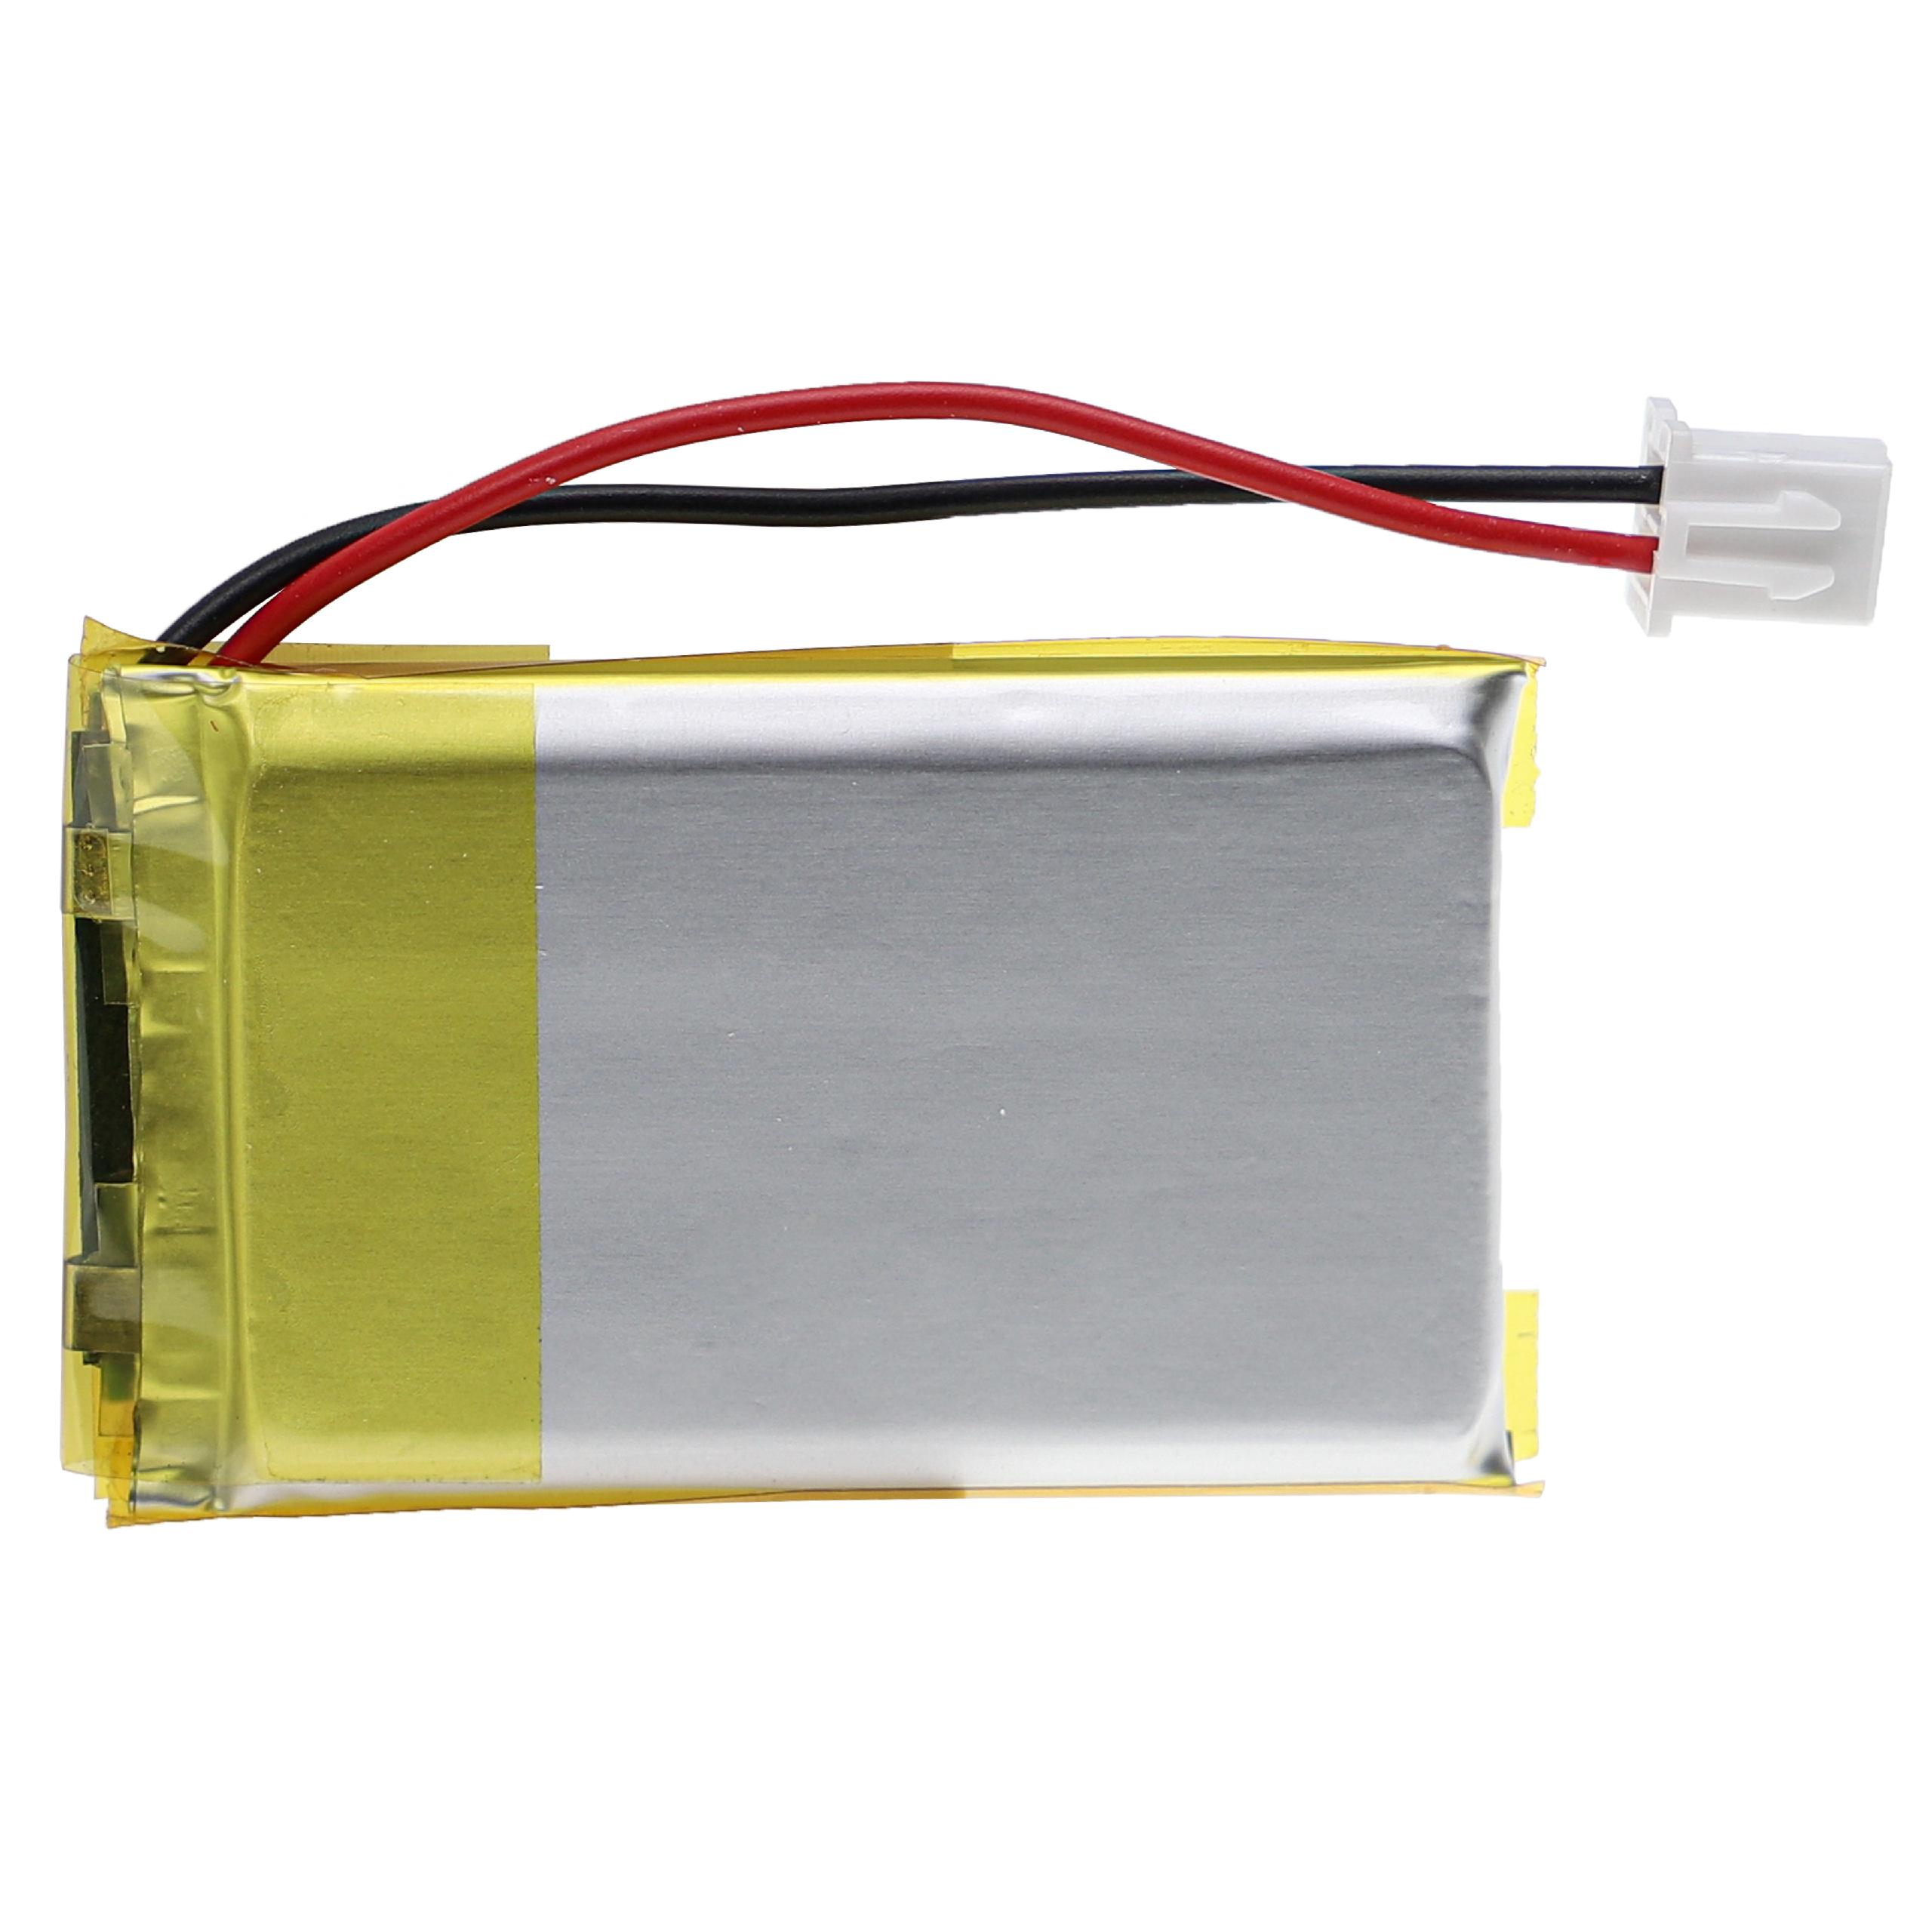 Batterie remplace Velocitek VTK86 pour compas électronique - 900mAh 3,7V Li-polymère